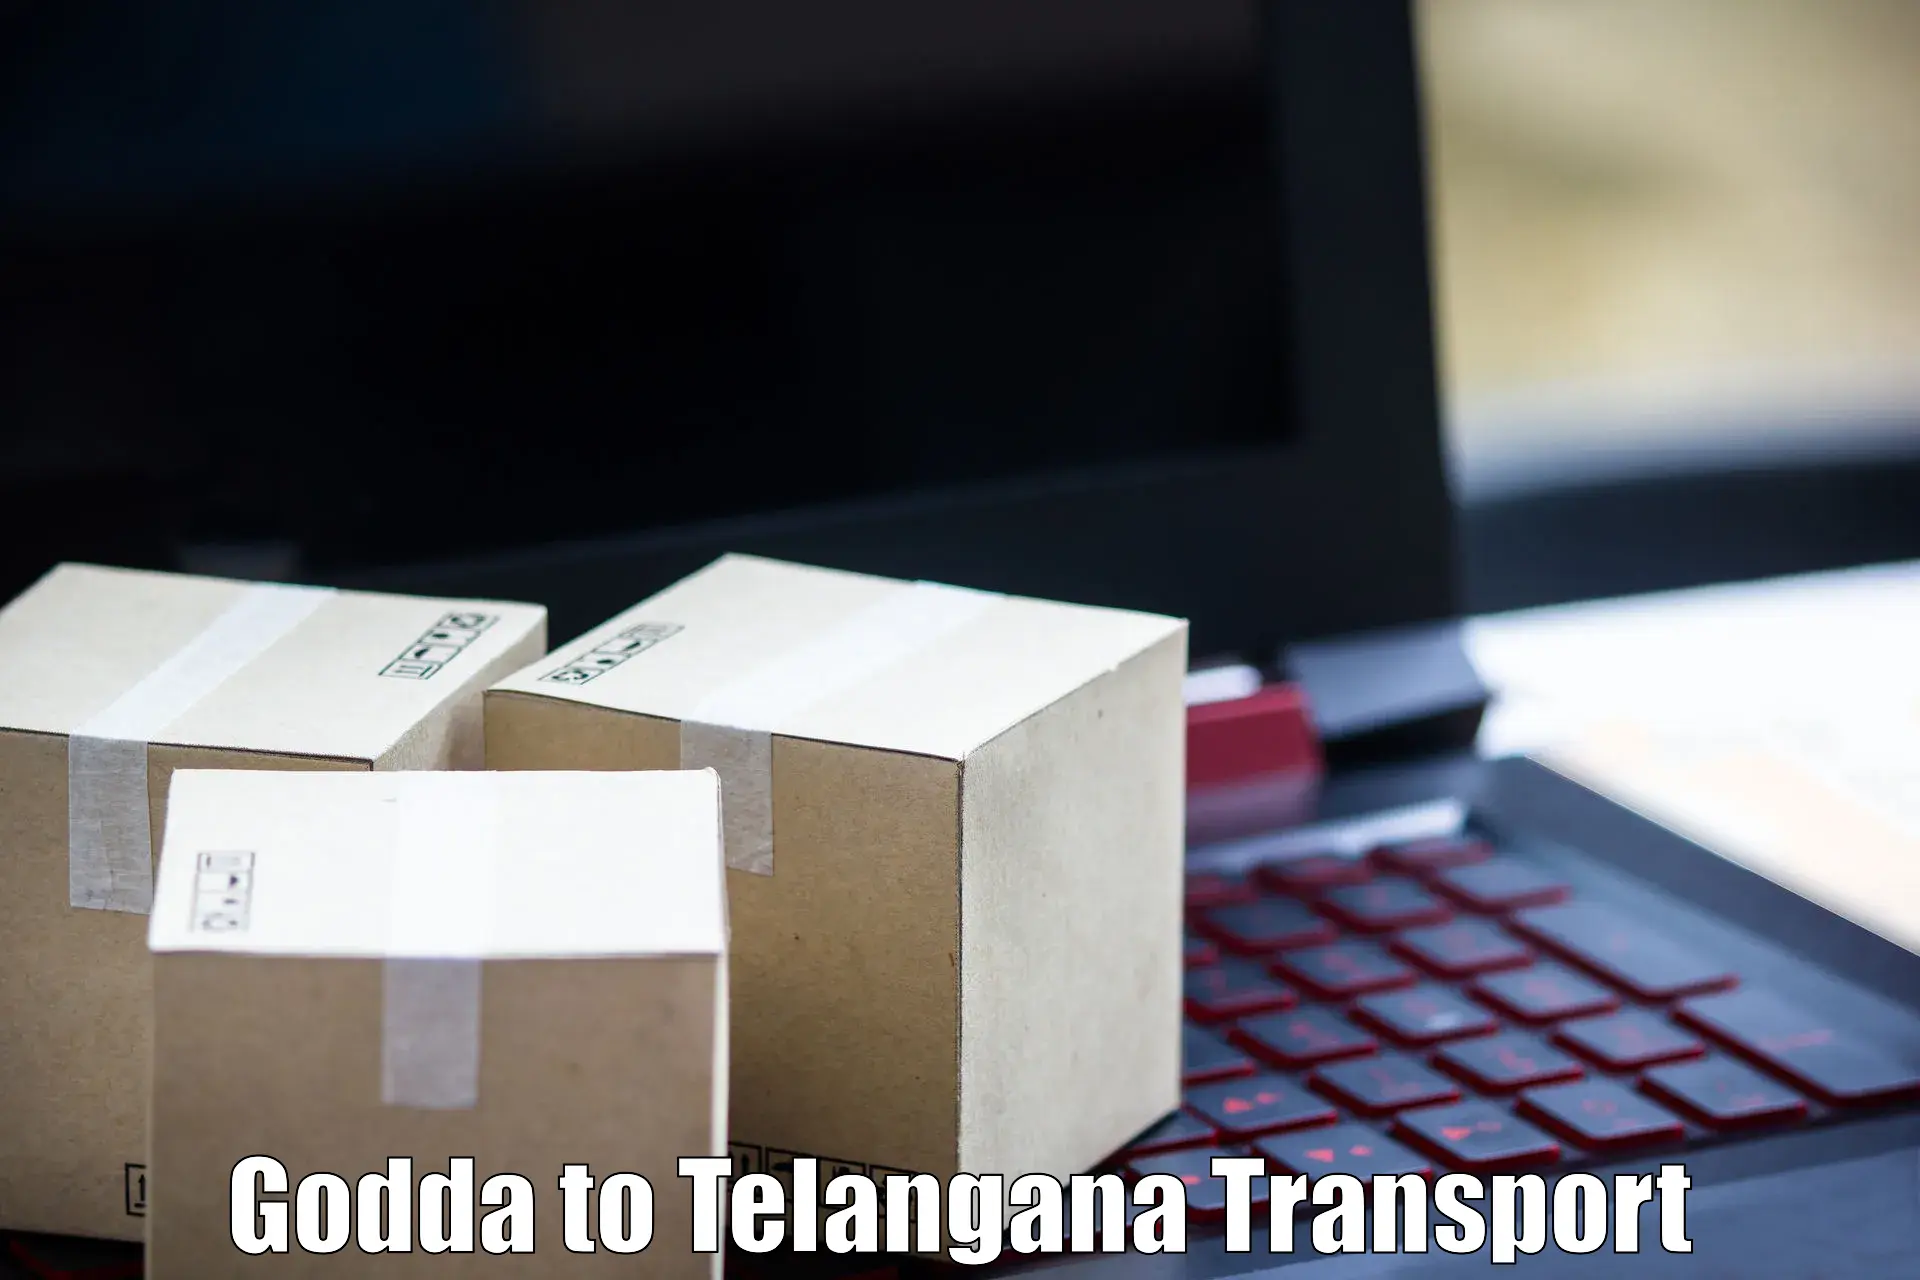 Container transportation services Godda to Shadnagar